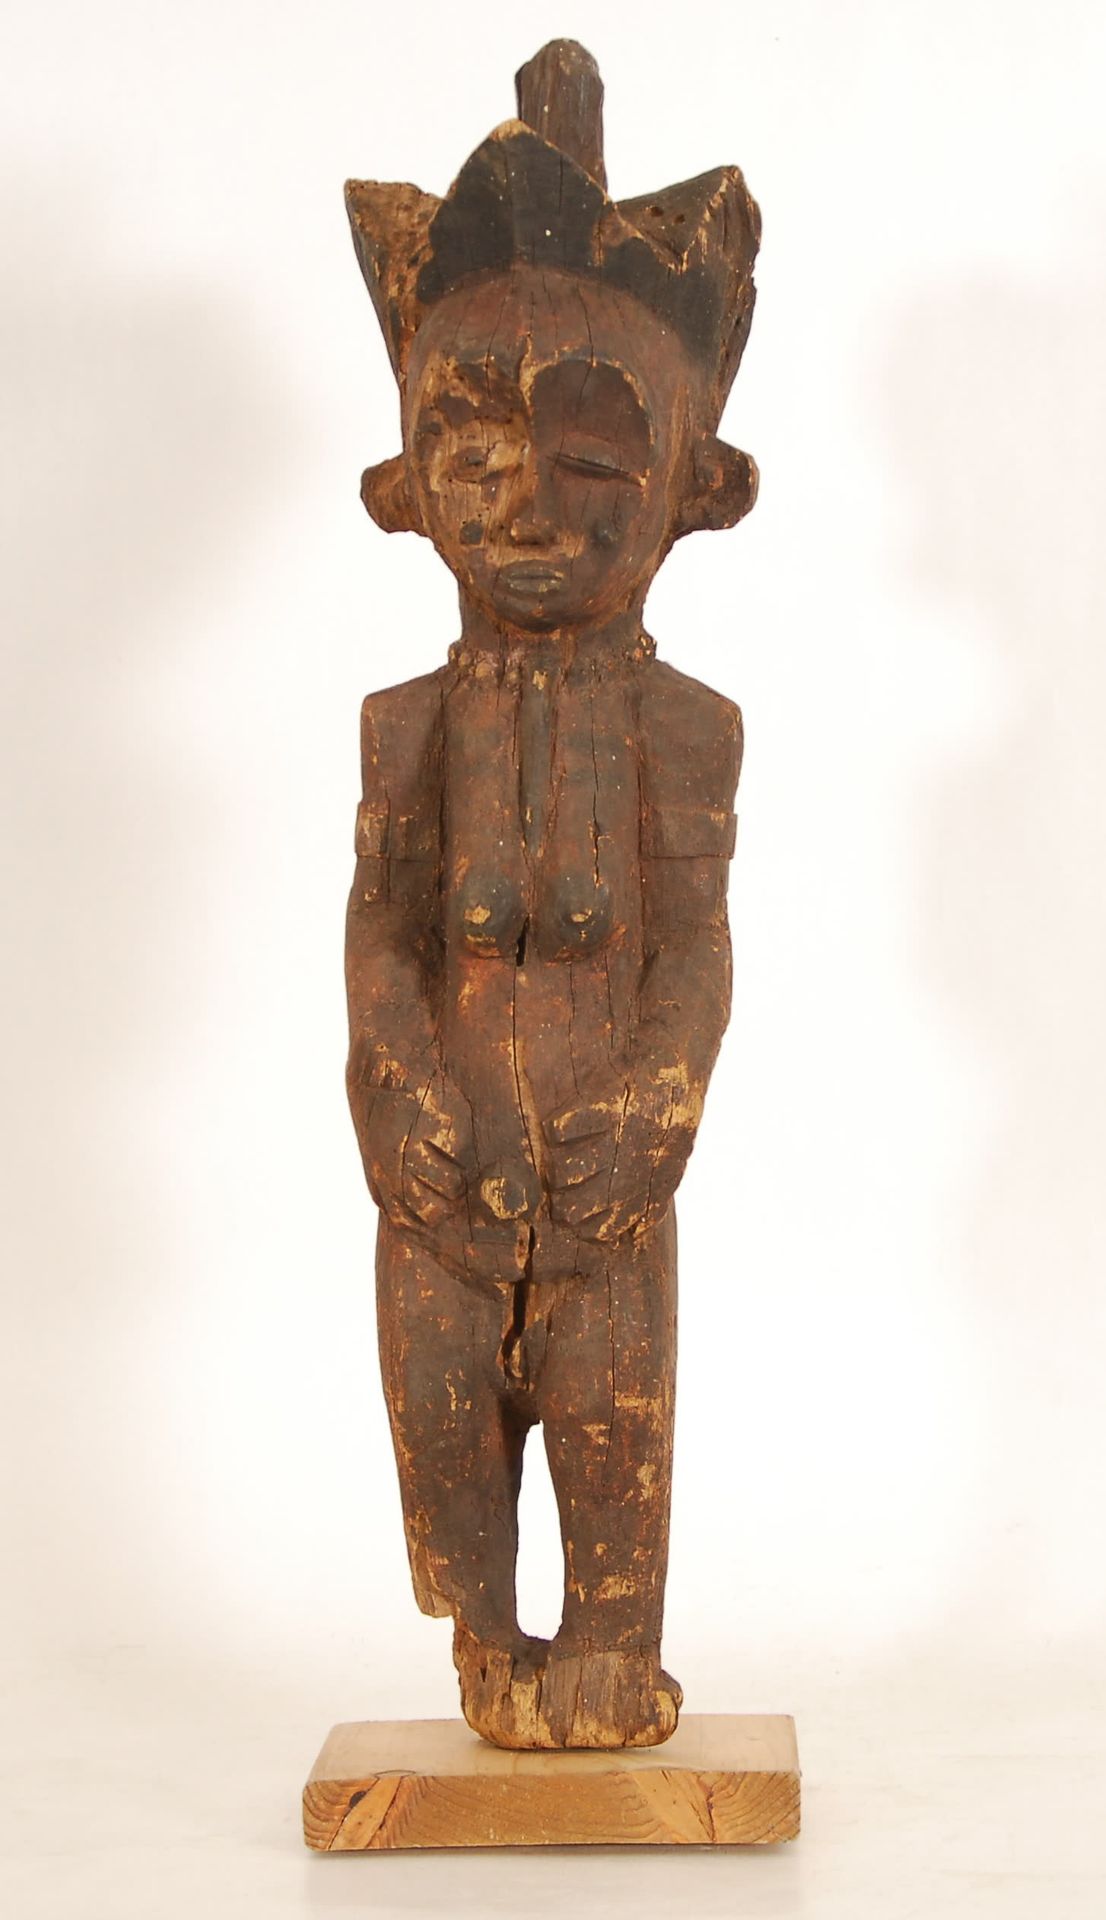 Afrique - Africa 彭德雕像
木雕。刚果民主共和国。
，高68厘米。